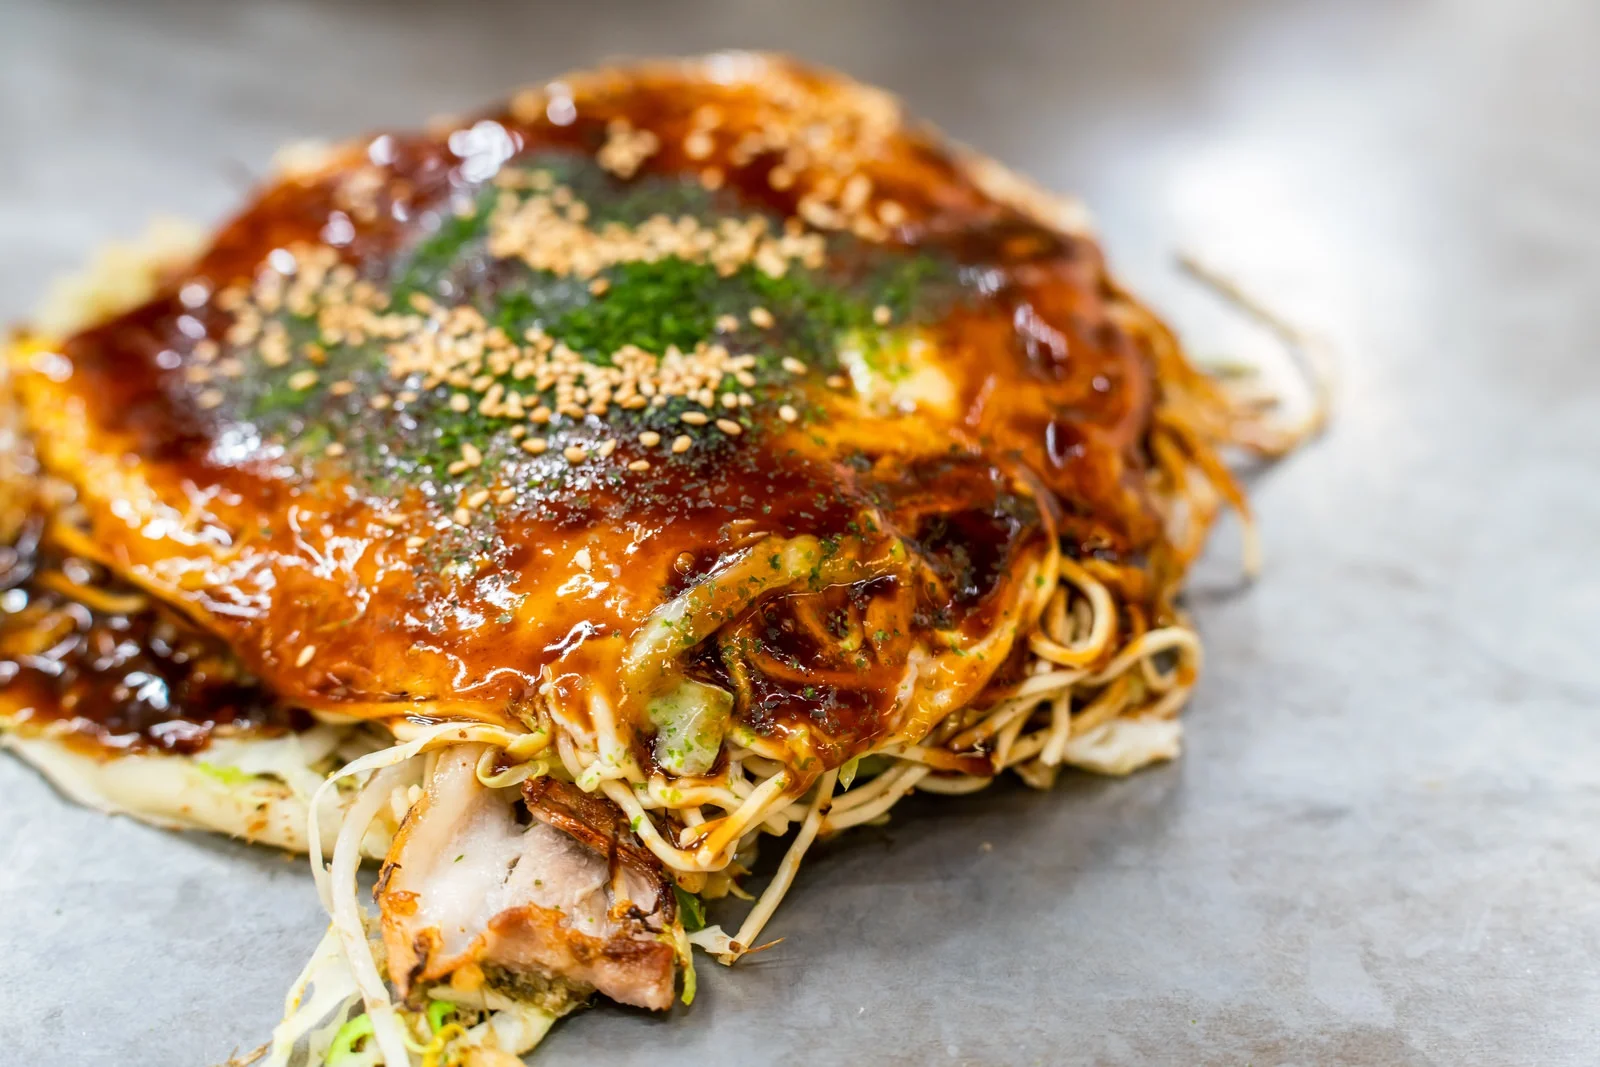 "Which one is Hiroshima-style Okonomiyaki ?"